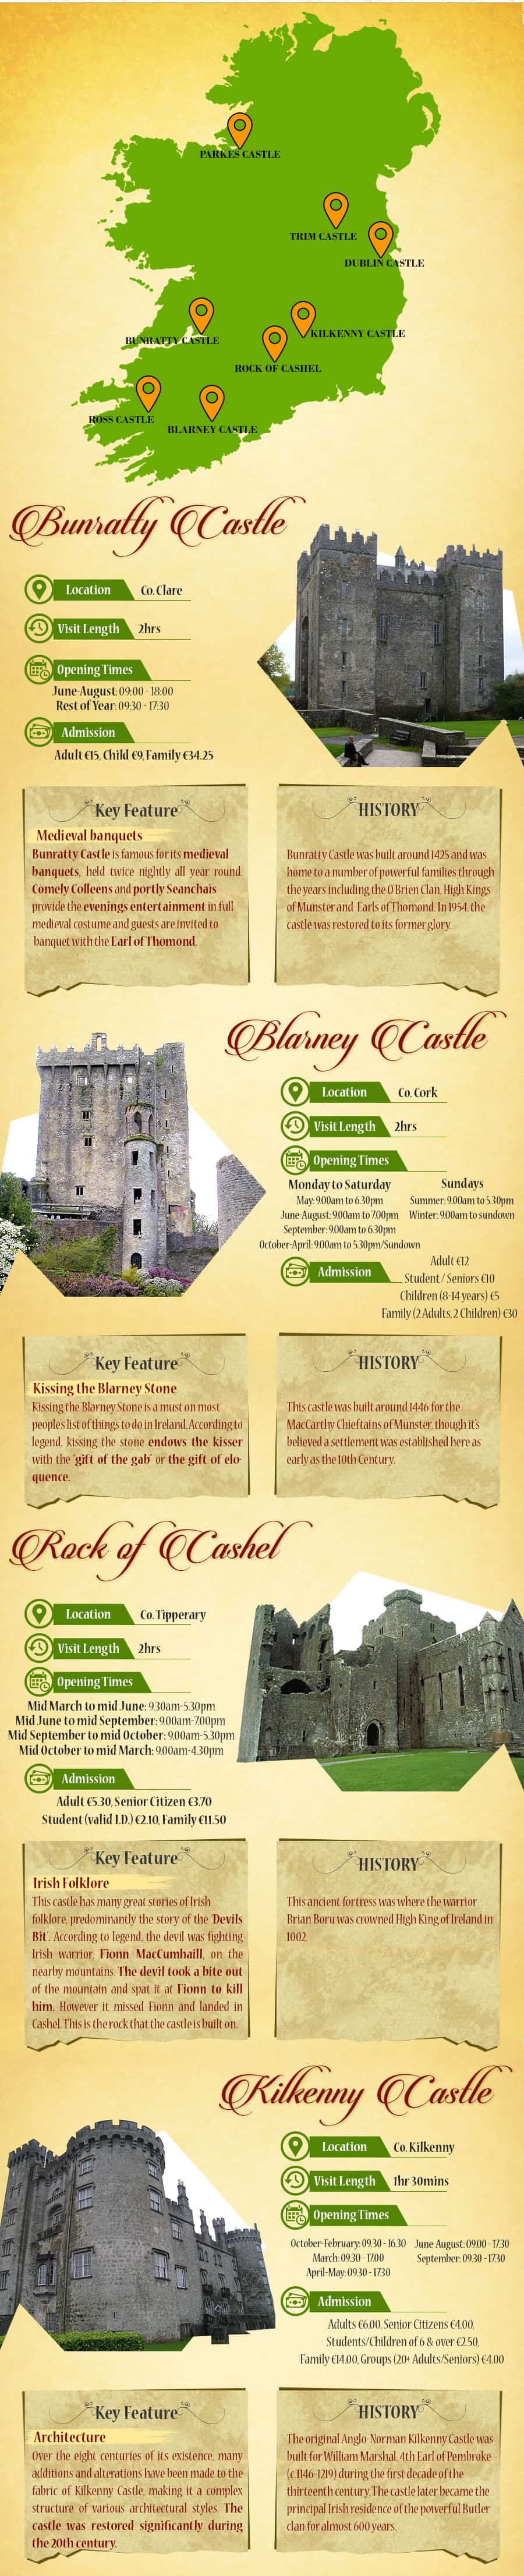 Best Castles in Ireland